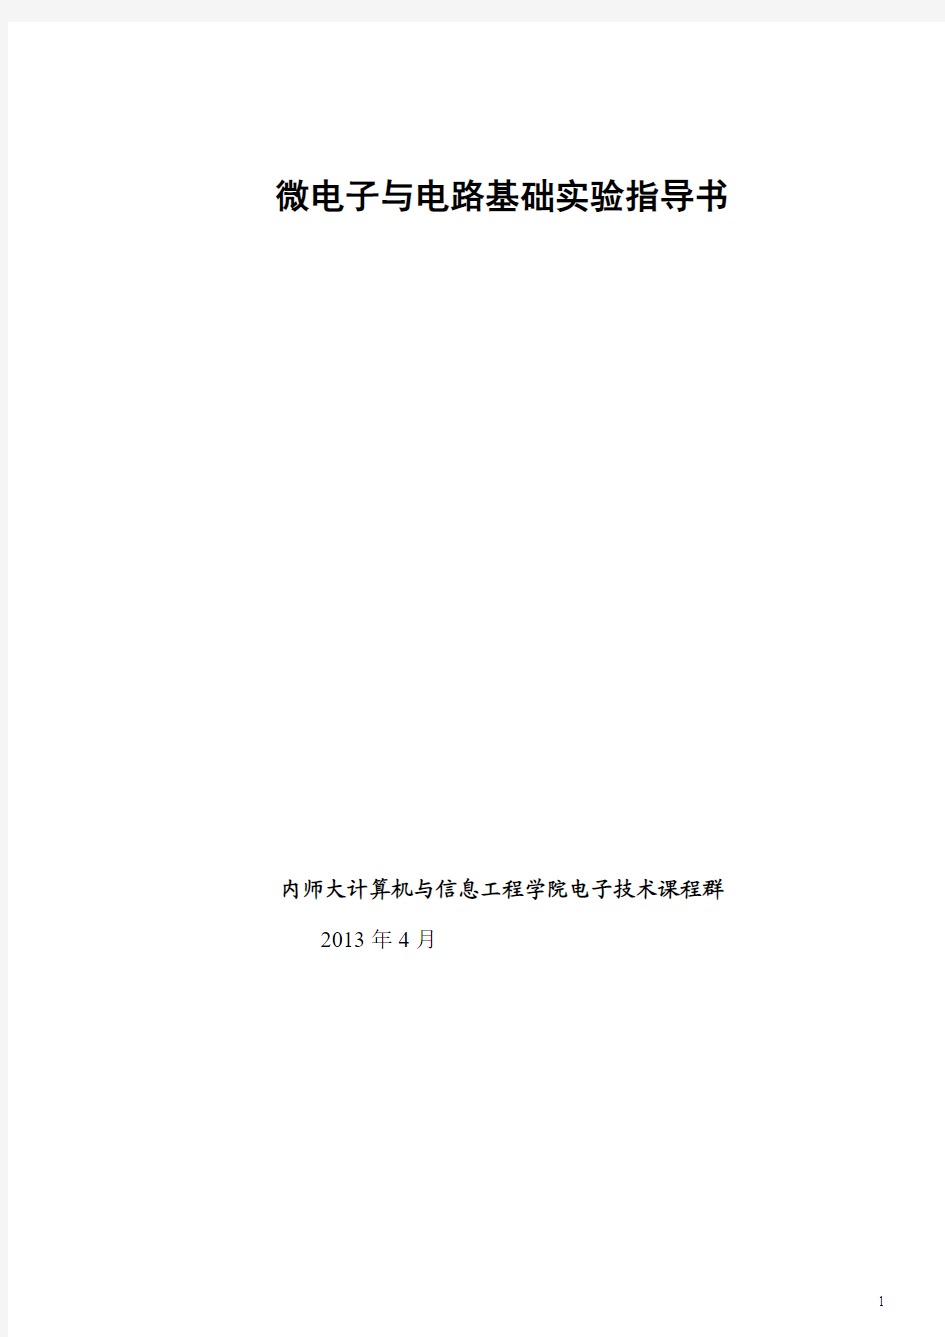 内蒙古师范大学——微电子与电路基础实验指导书54